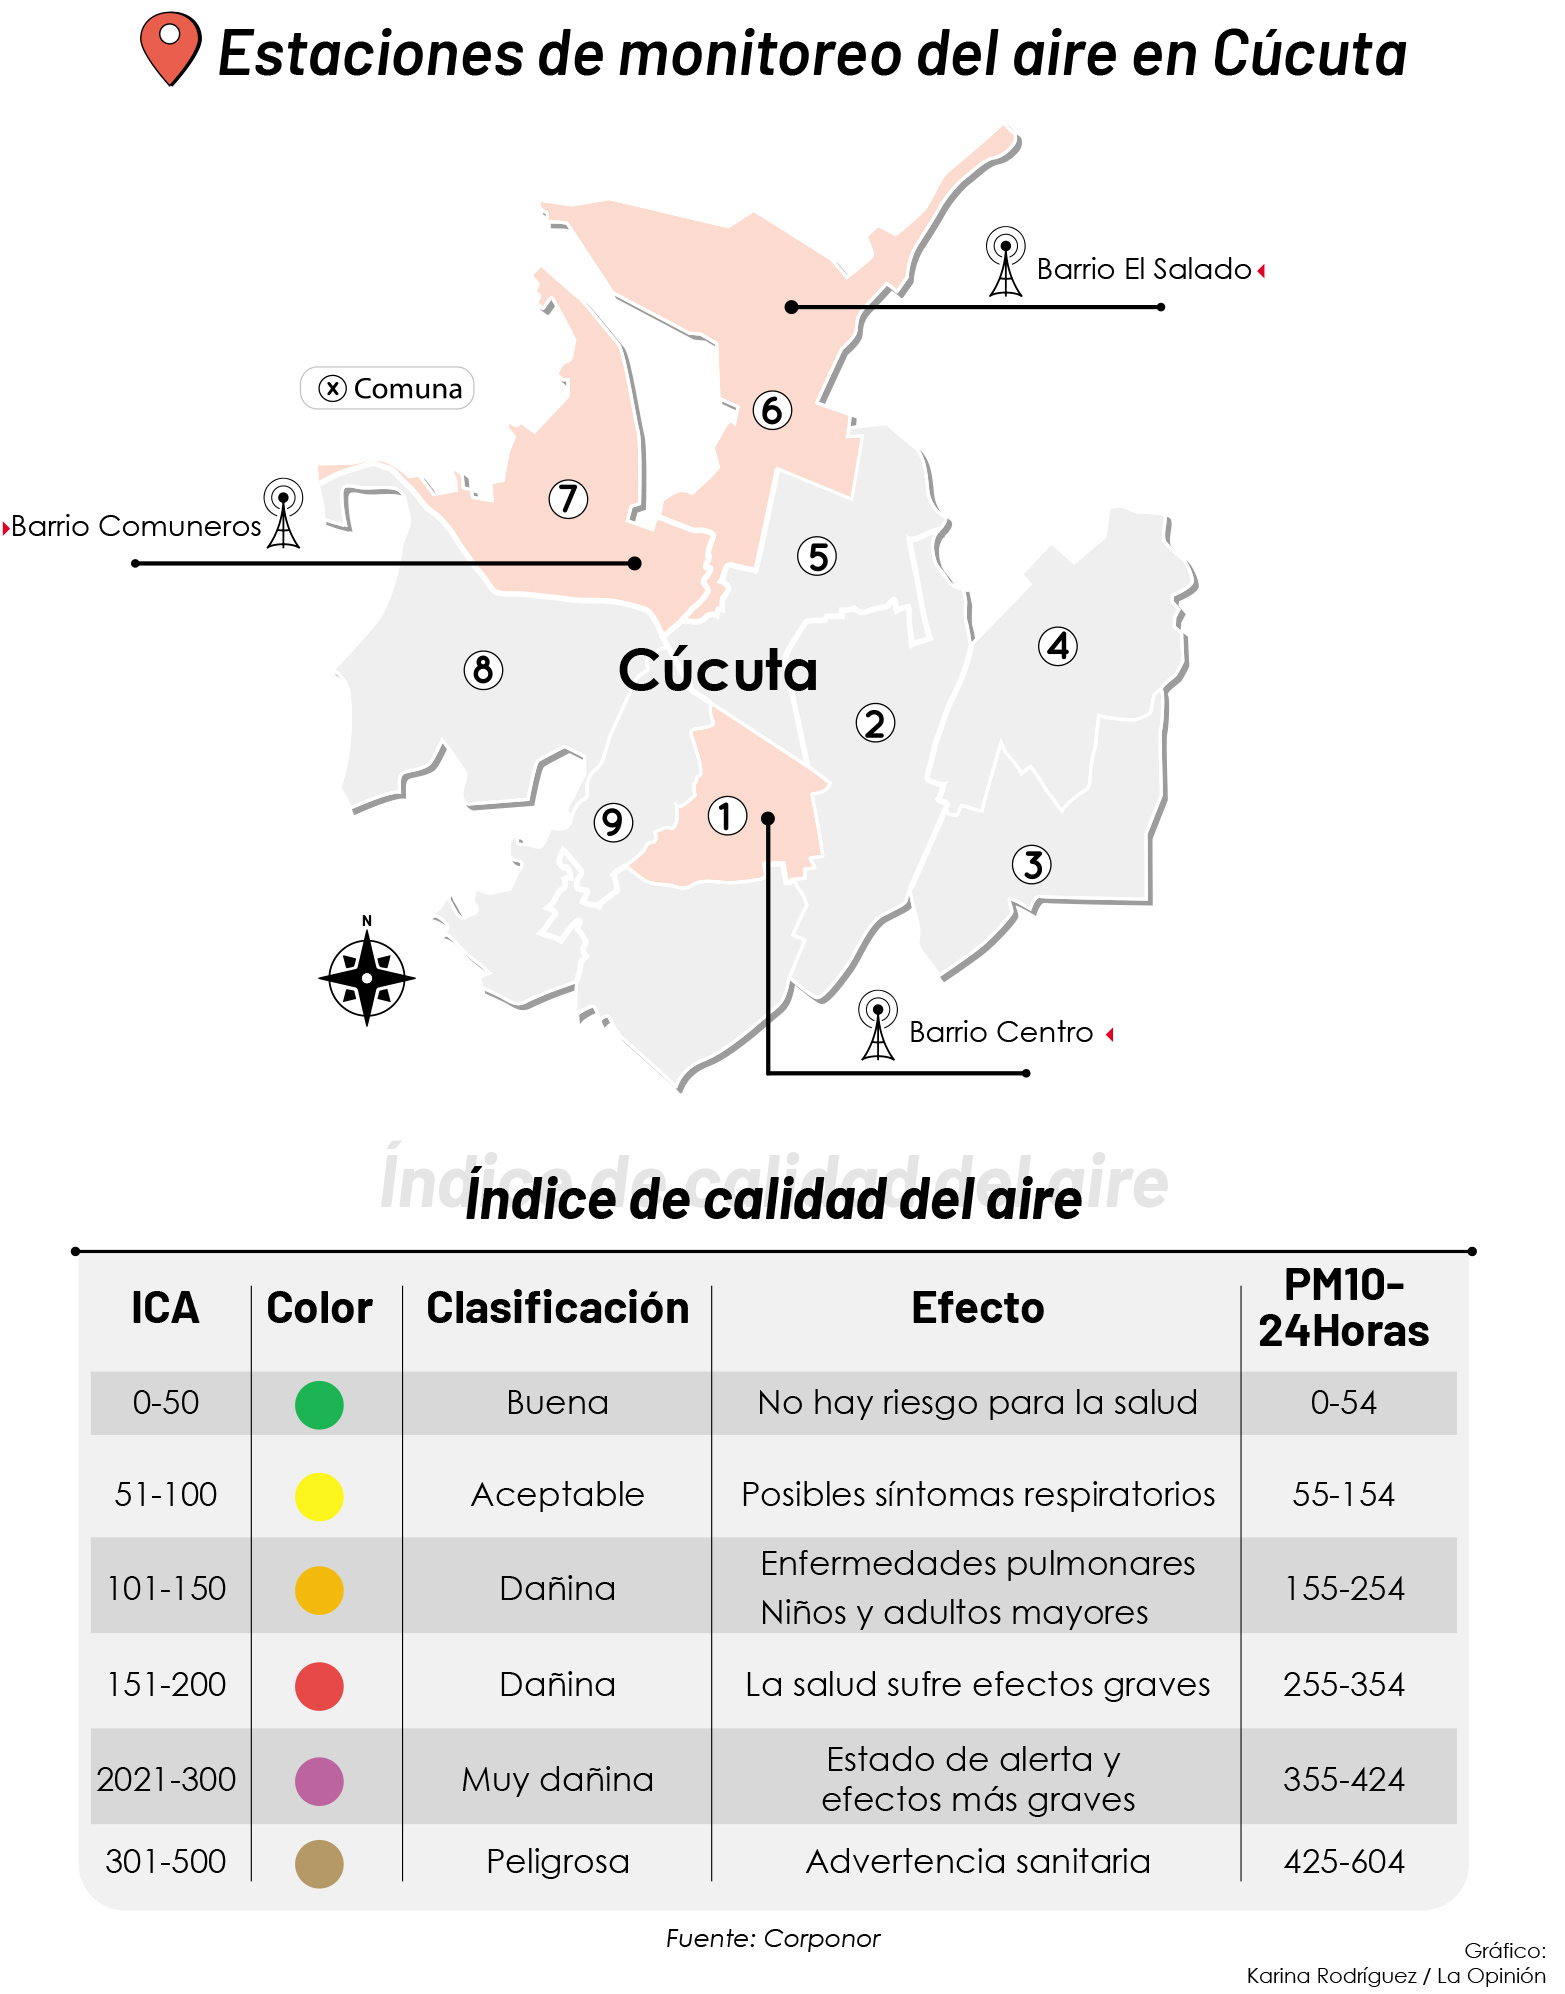 Estaciones de monitoreo del aire en Cúcuta